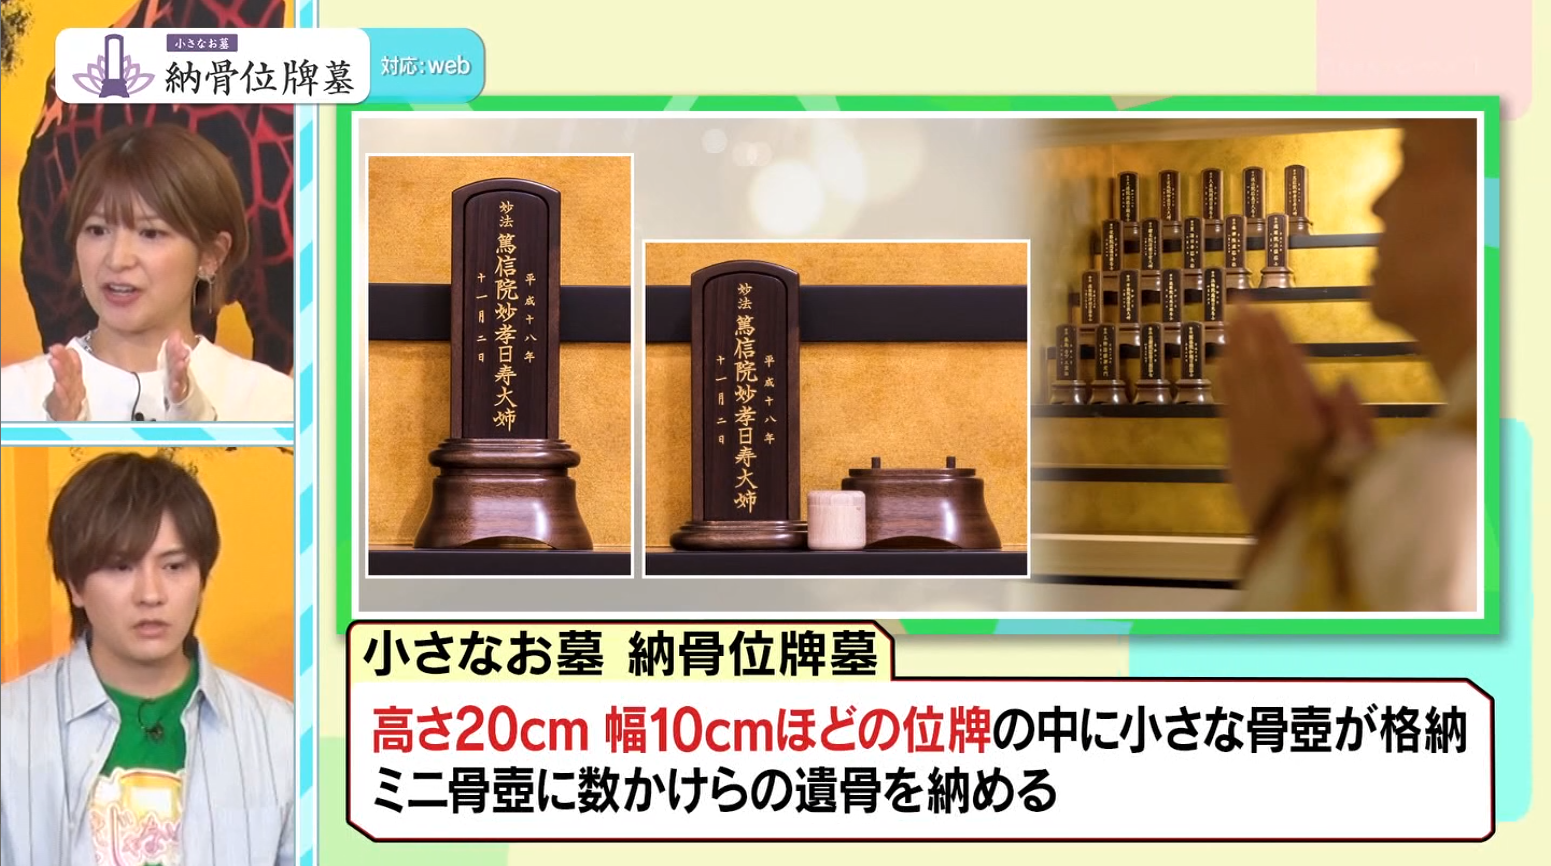 「小さなお墓 納骨位牌墓」が、TOKYO MX系テレビ番組「ええじゃないか!!」にてご紹介いただきました。